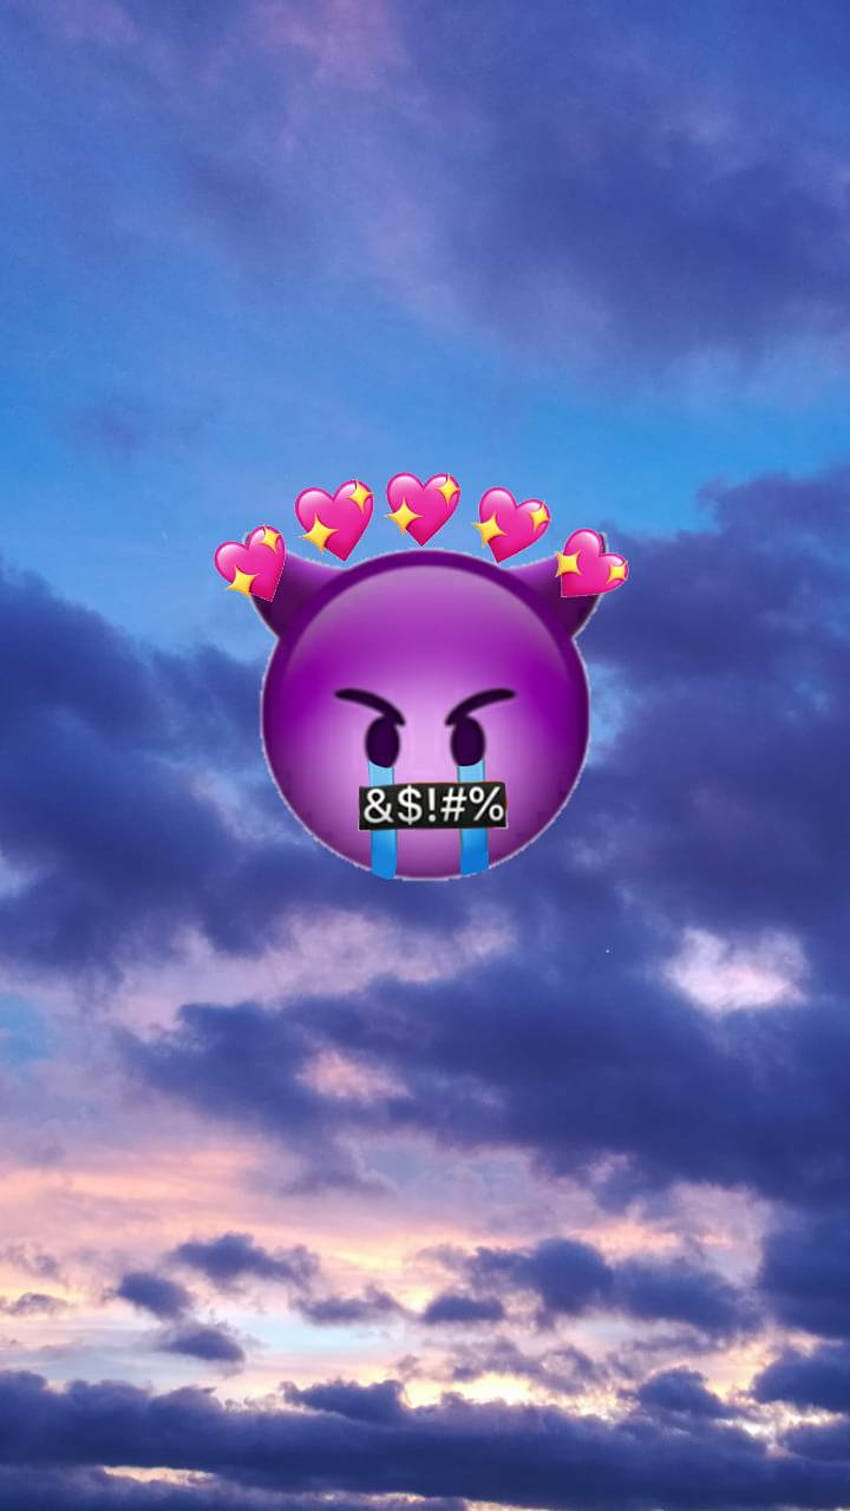 Free download Devil Emoji Wallpapers Top Free Devil Emoji Backgrounds  720x1280 for your Desktop Mobile  Tablet  Explore 23 Emoji Backgrounds   Alien Emoji Wallpaper Emoji Wallpapers Emoji Wallpapers Girly